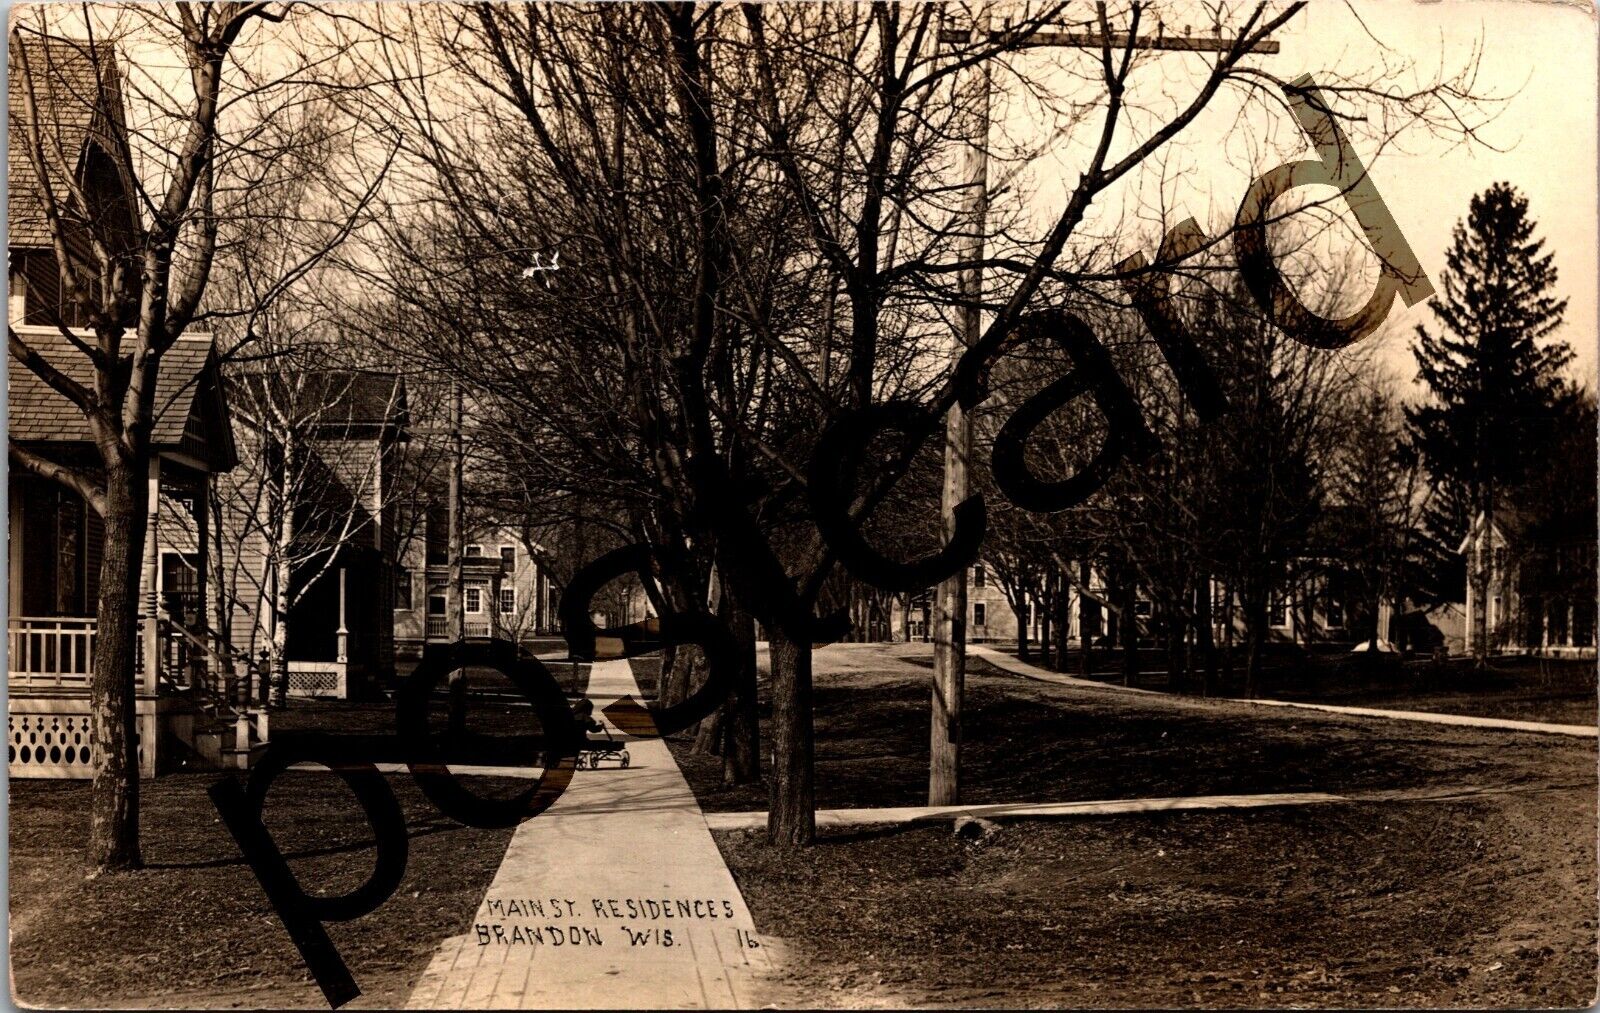 1910 BRANDON WI, Main St. Residences, boy on wagon, RPPC postcard jj249